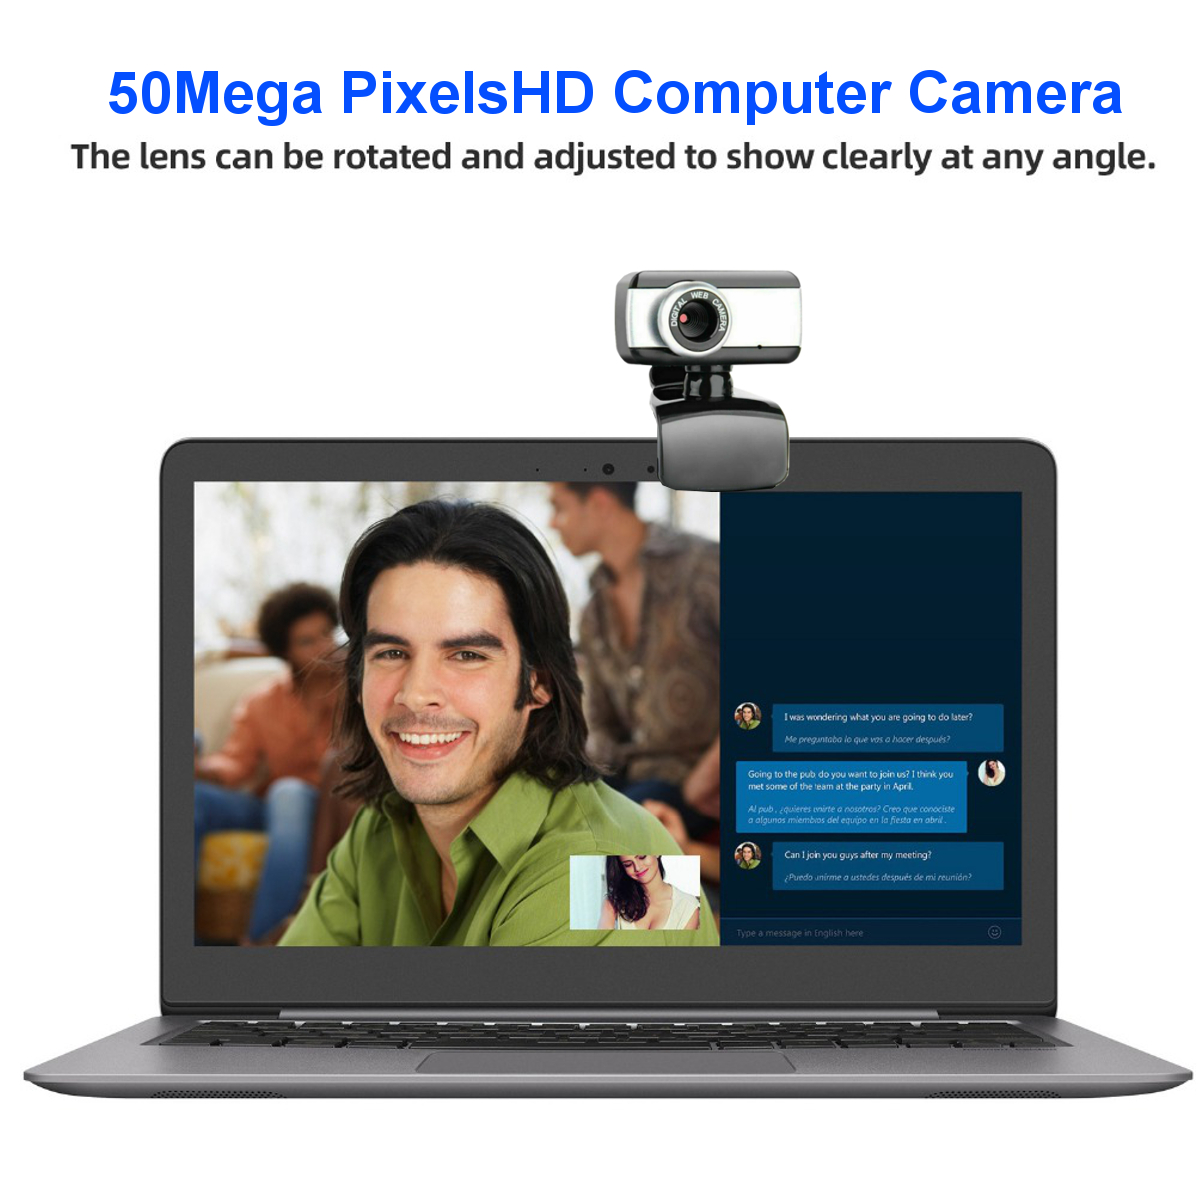 720P-HD-Webcam-CMOS-50-Mega-Pixels-USB20-Web-Camera-Built-in-Microphone-Camera-for-Desktop-Computer--1769965-3